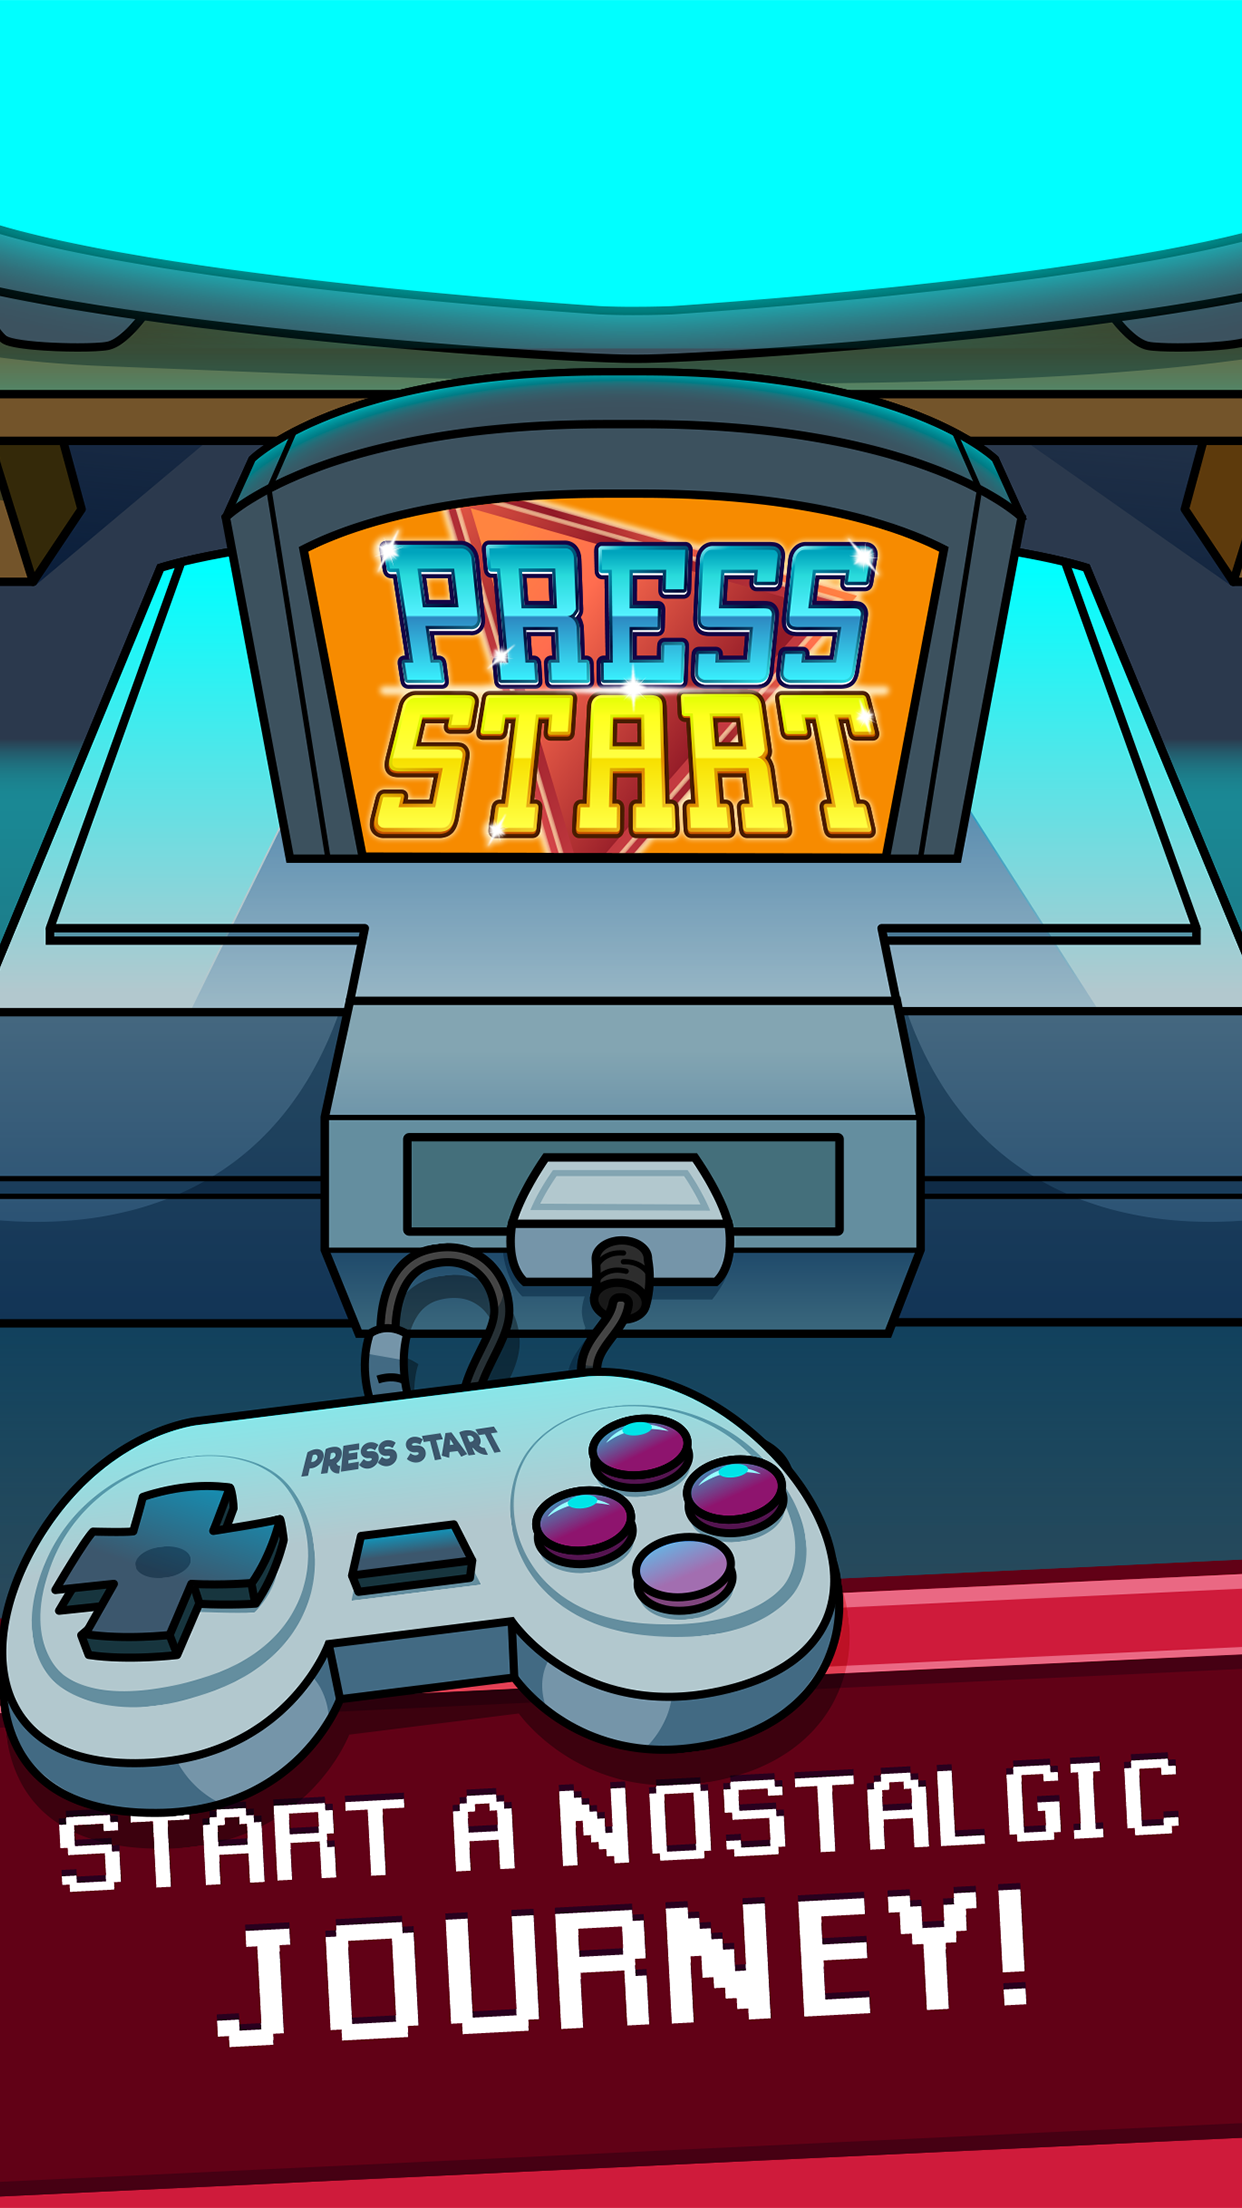 Screenshot 1 of Press Start - Game Nostalgia Clicker 1.0.28